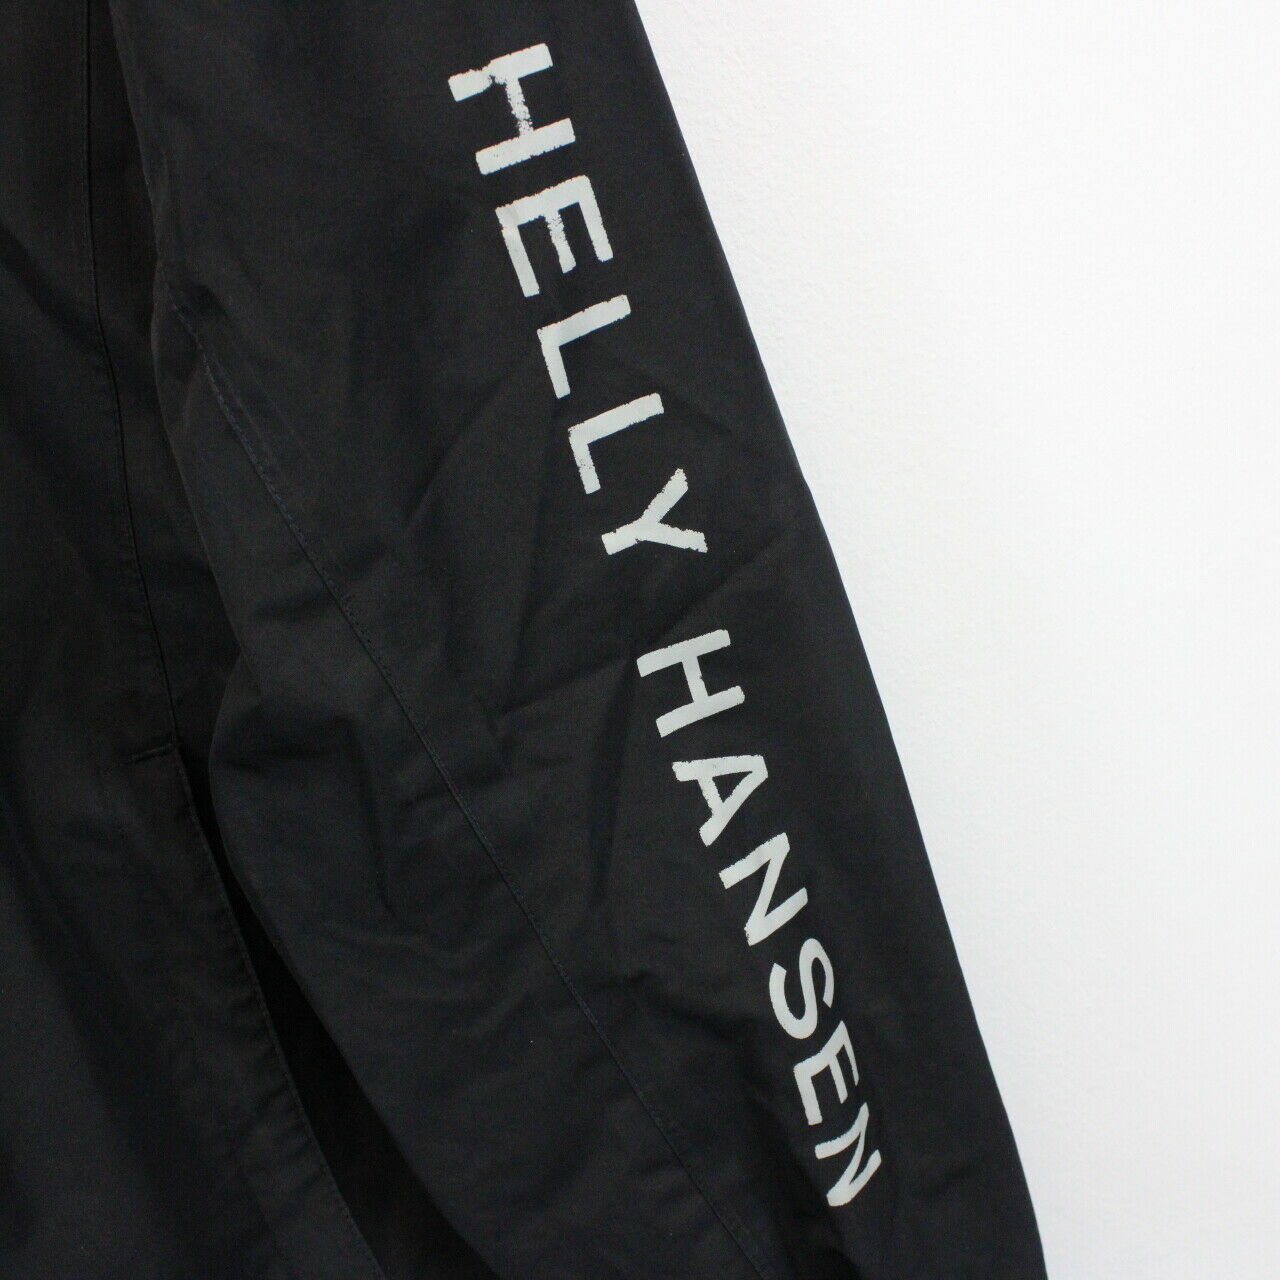 HELLY HANSEN Jacket Black | Medium